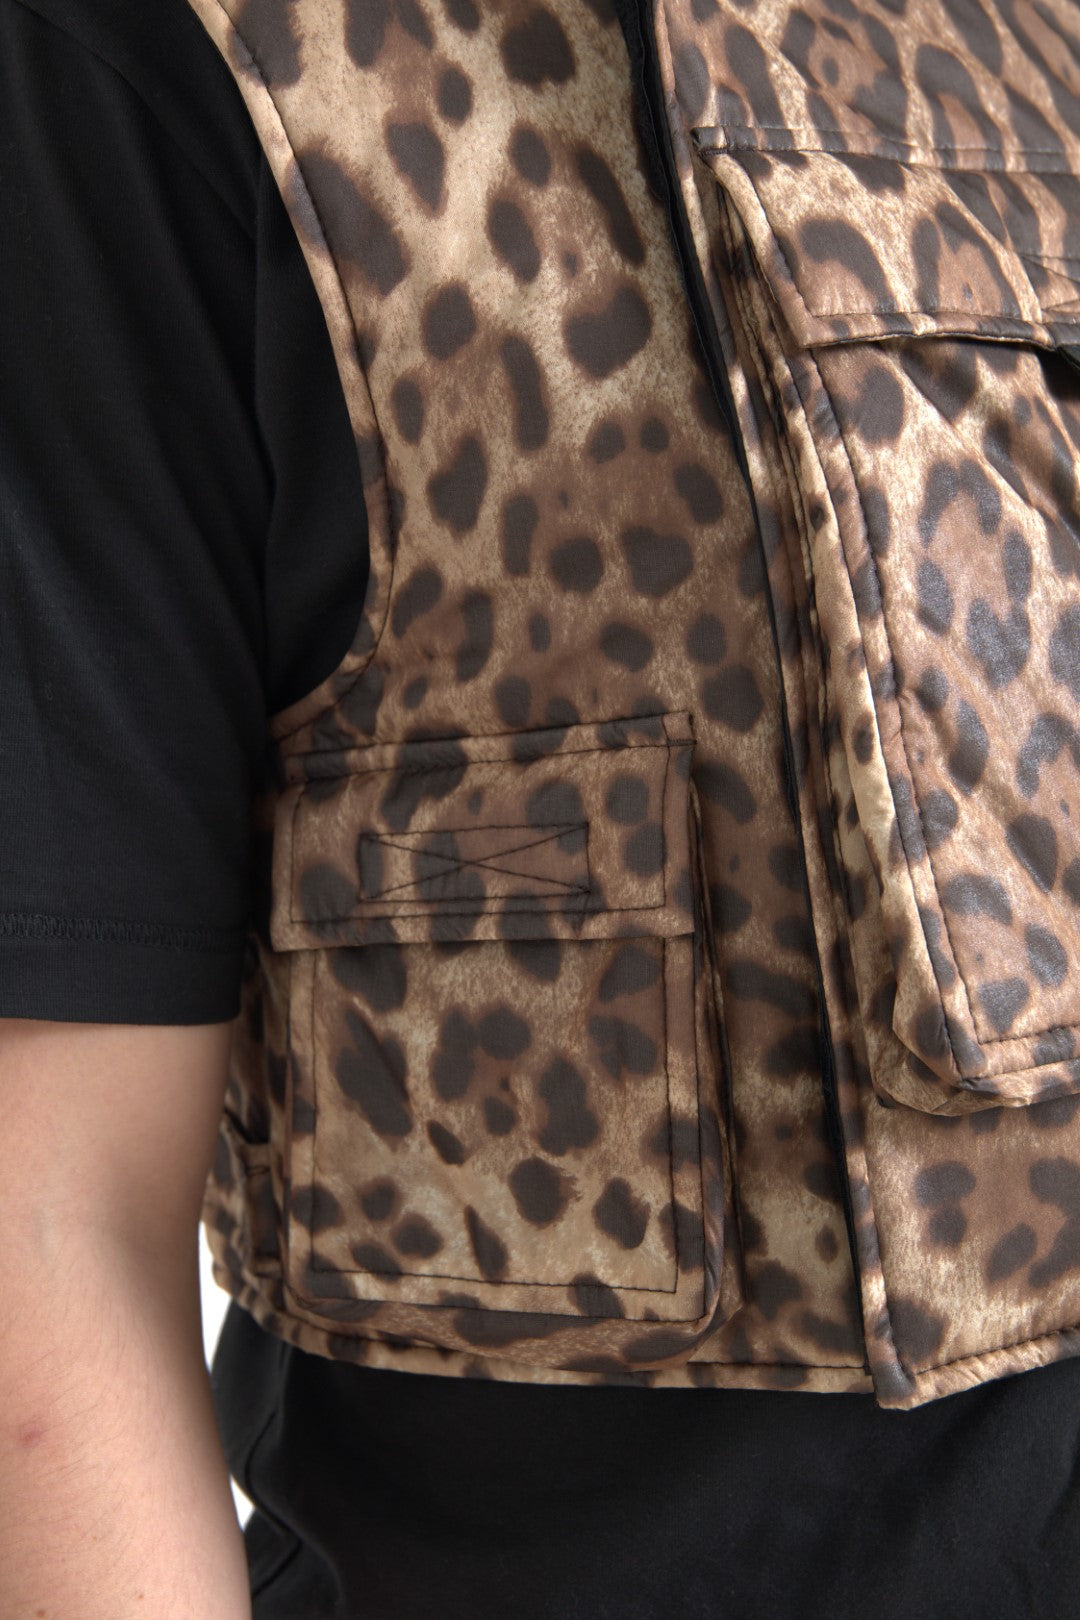 Dolce &amp; Gabbana Brown Leopard Silk Sleeveless Sportswear